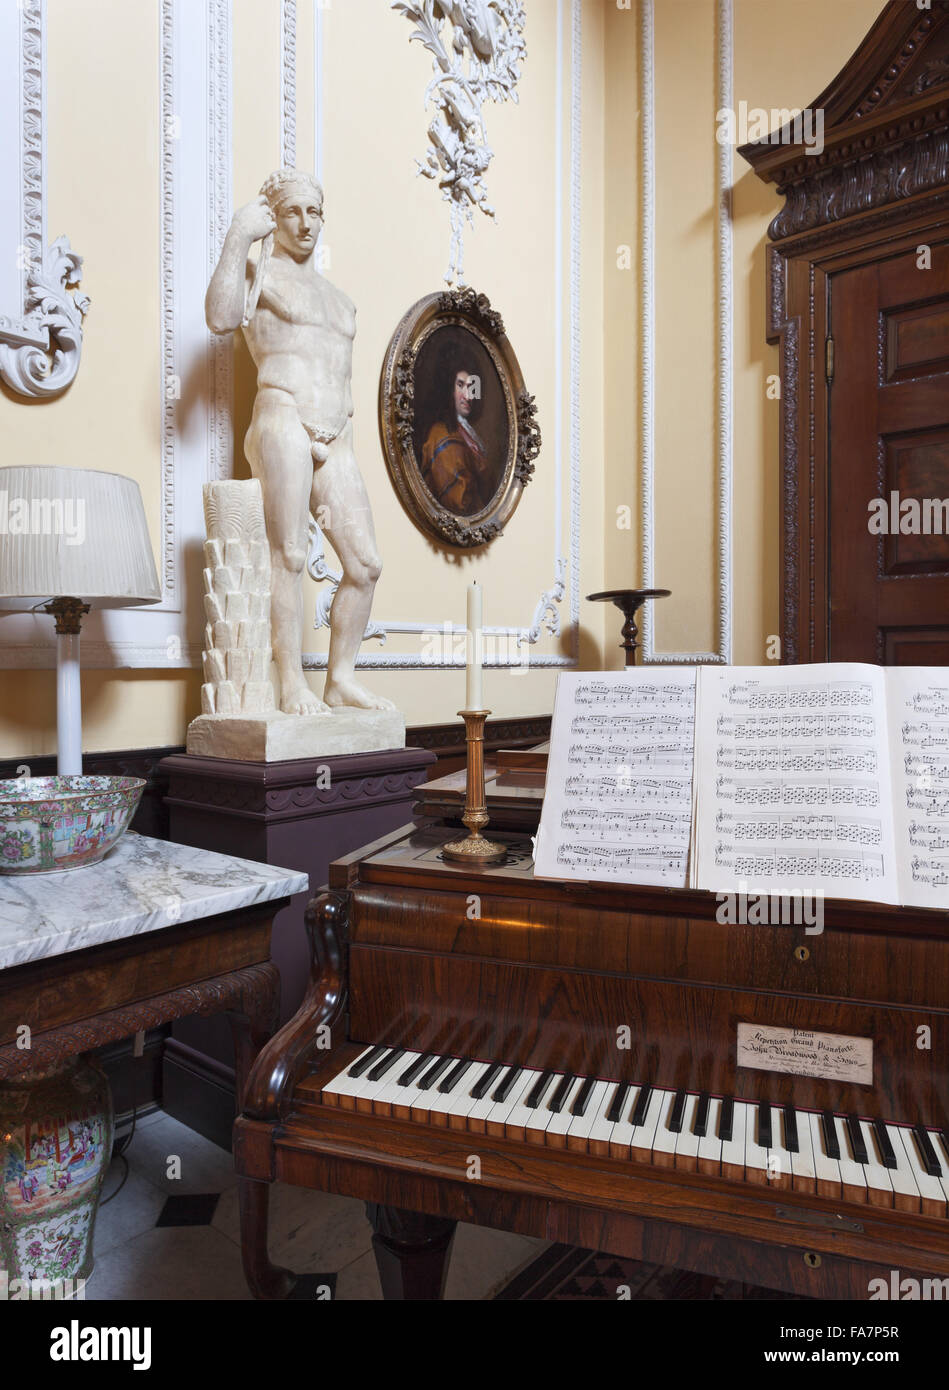 El Broadwood grand piano, de 1847, de la colección Cobbe, escalera en el hall, en Hatchlands Park, Surrey. Chopin realiza su inglés recitales en este piano. Foto de stock